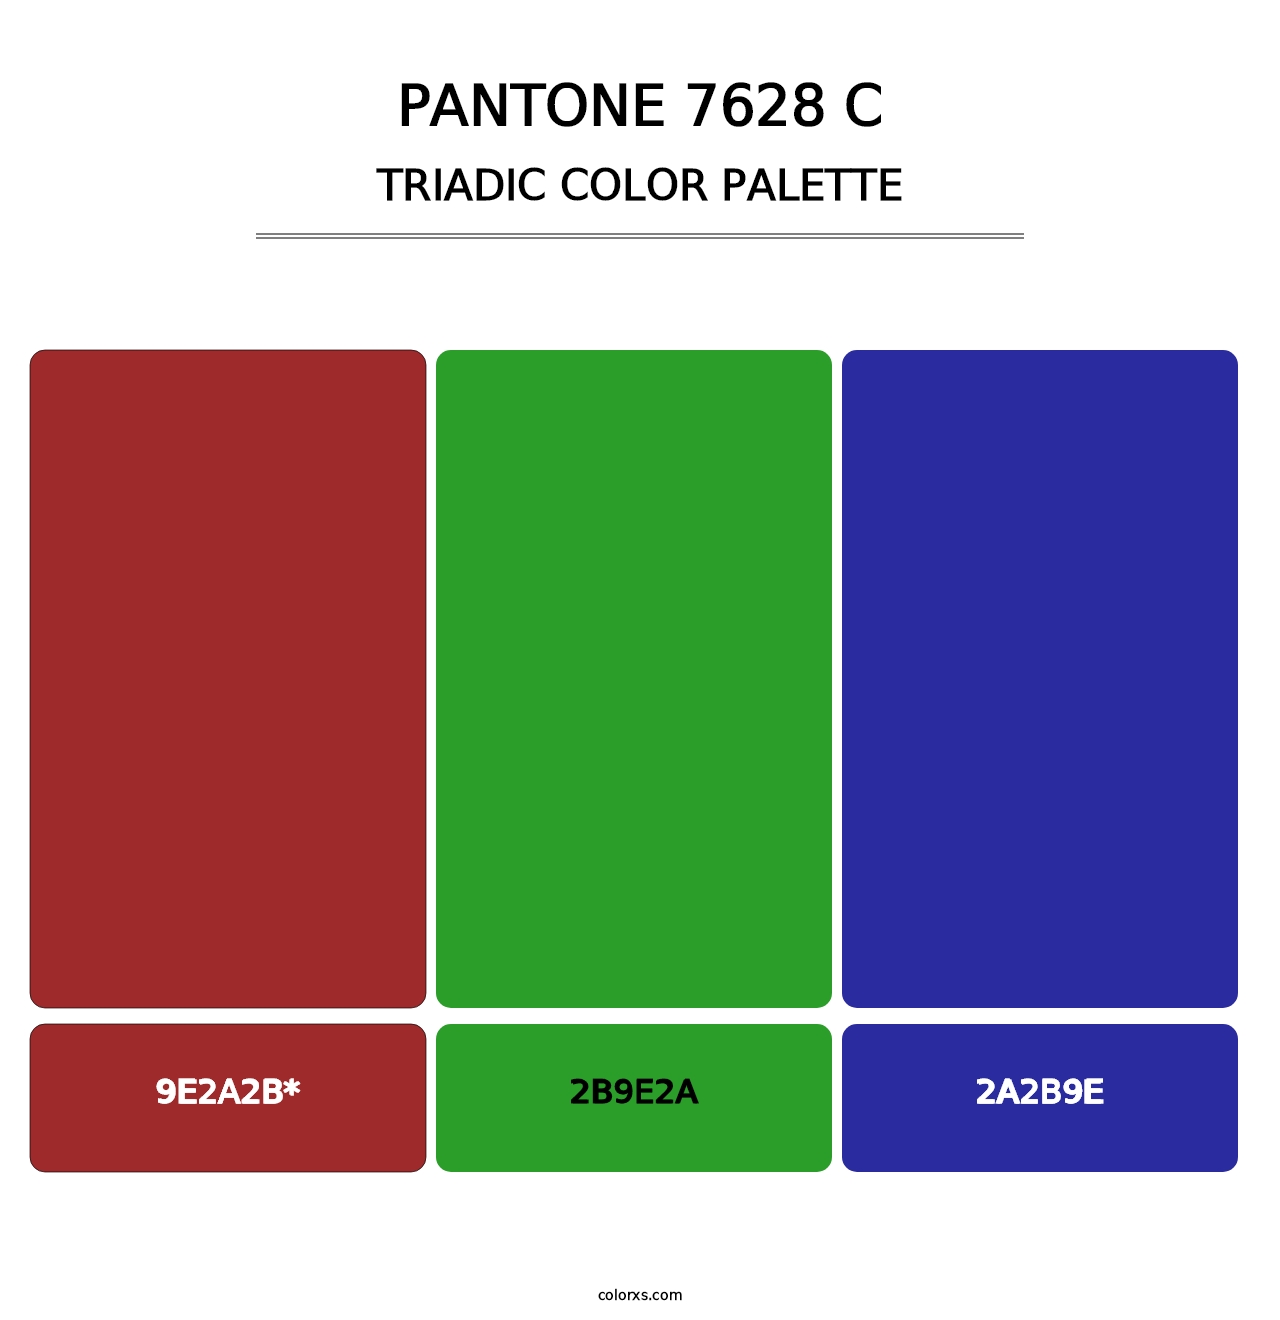 PANTONE 7628 C - Triadic Color Palette